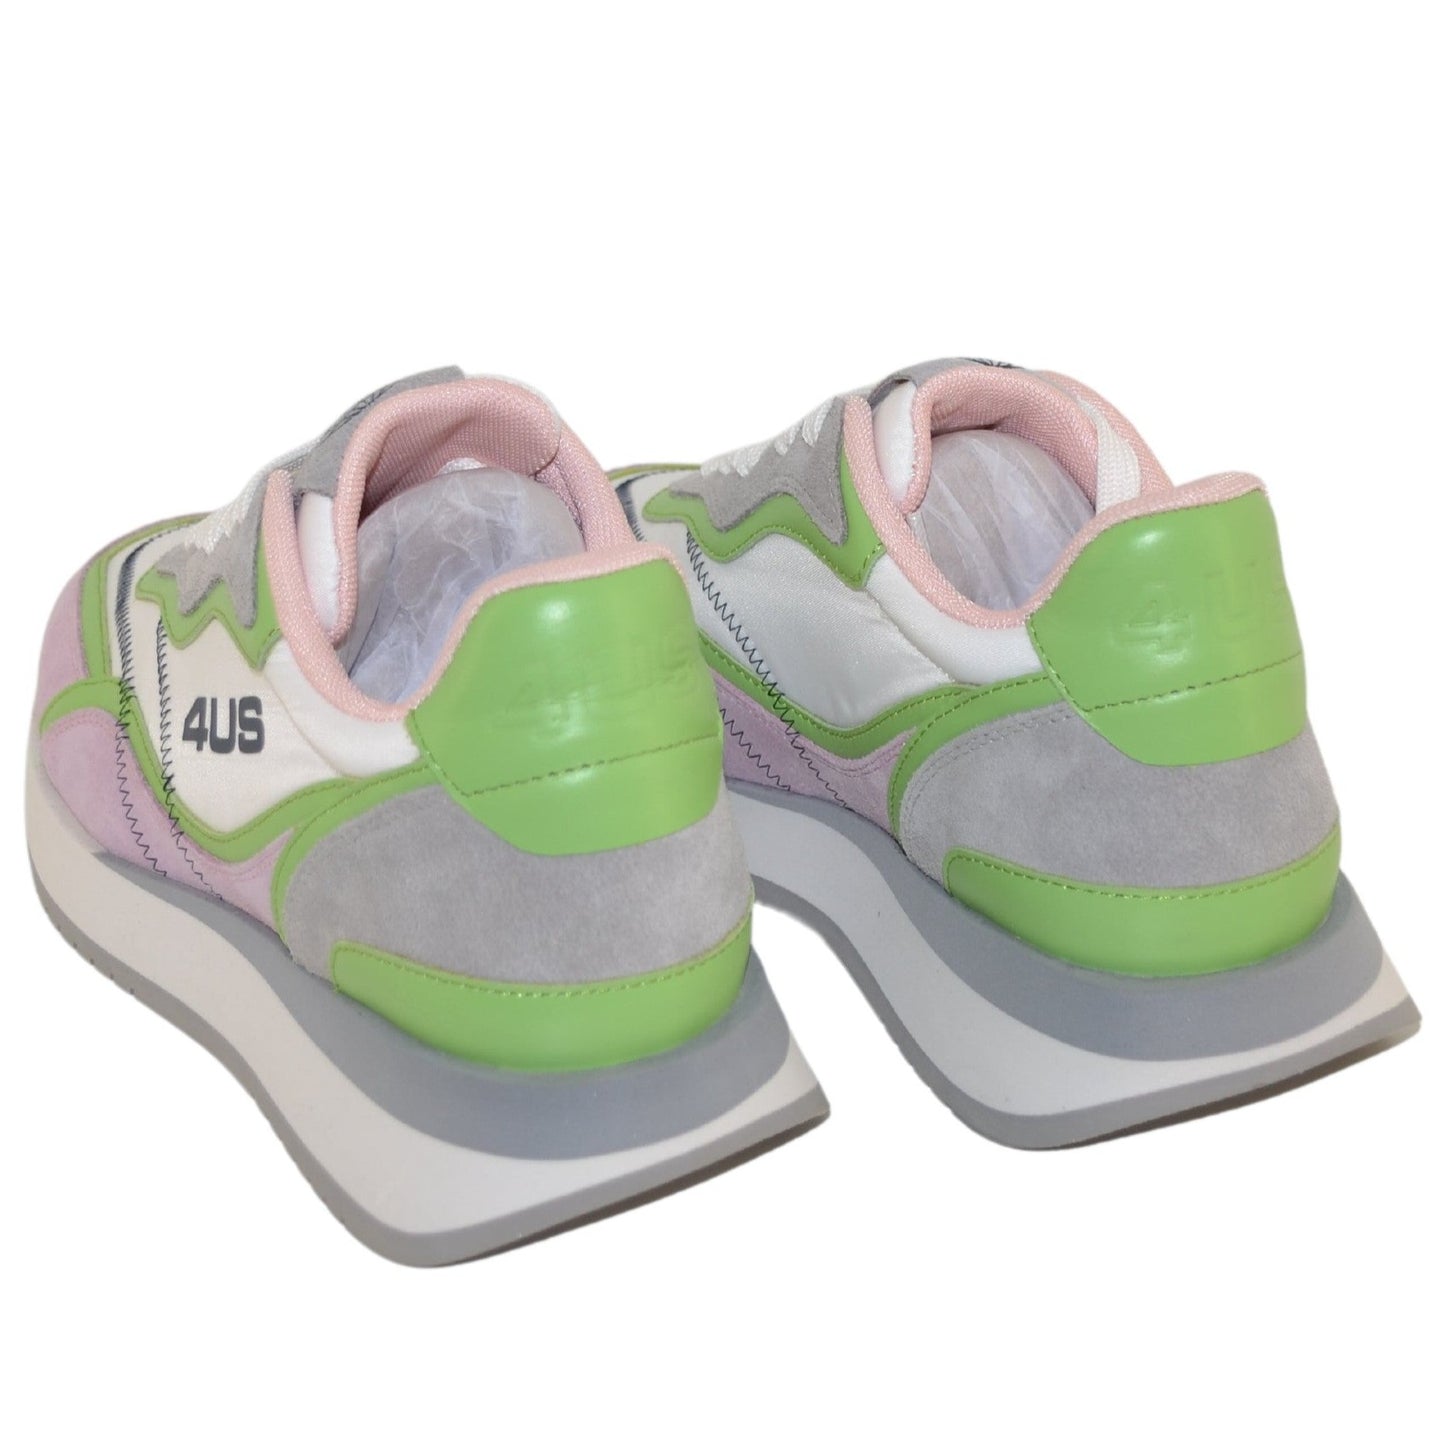 Sneakers Cesare Paciotti 4us donna pelle e tessuto bianco rosa e verde